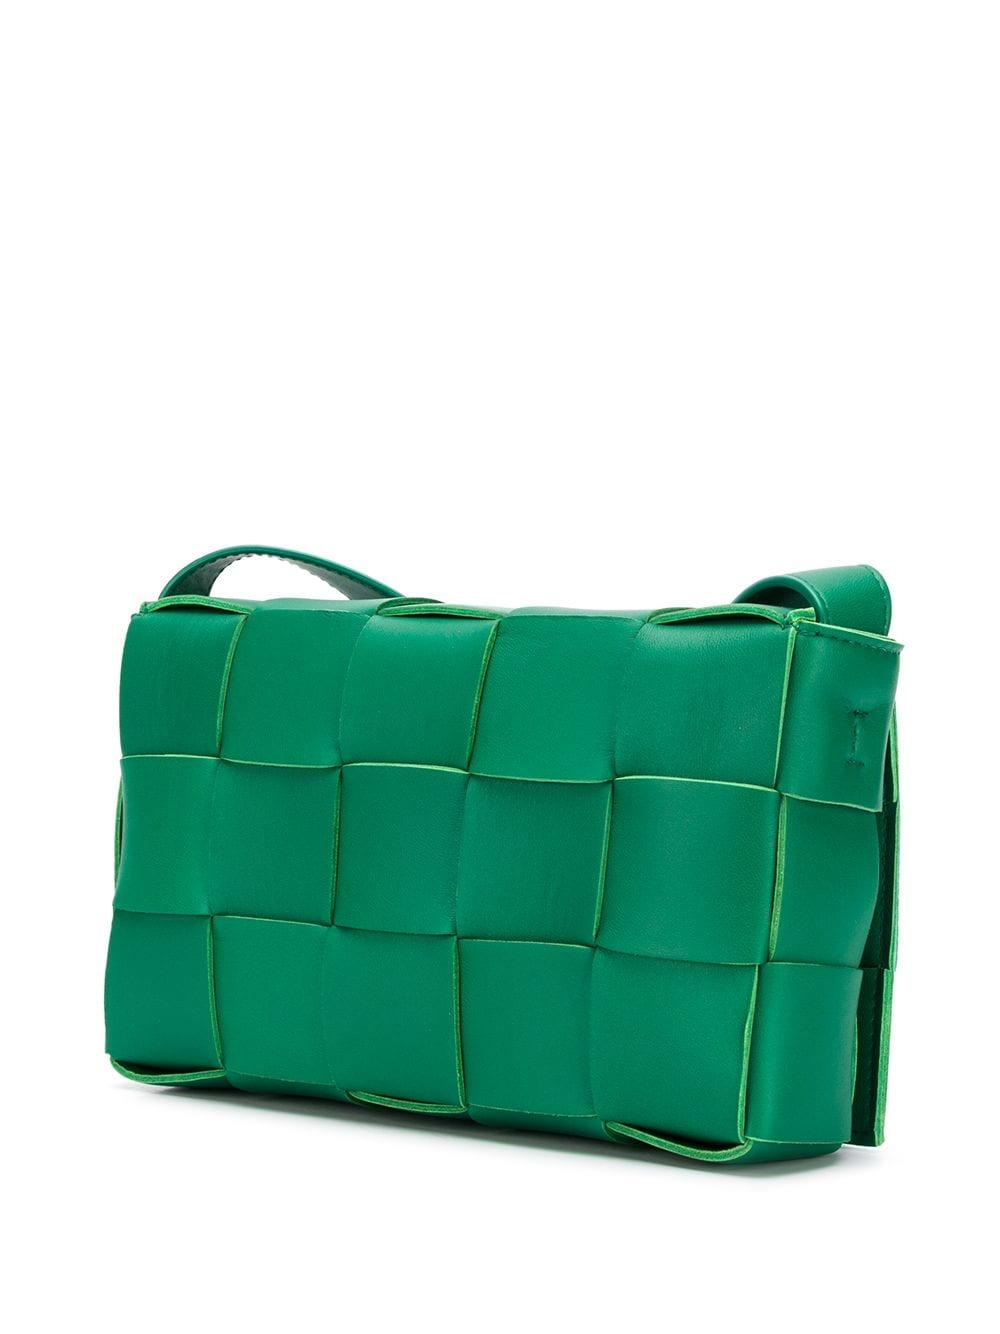 Bottega Veneta Leather Cassette Crossbody Bag in Green - Lyst